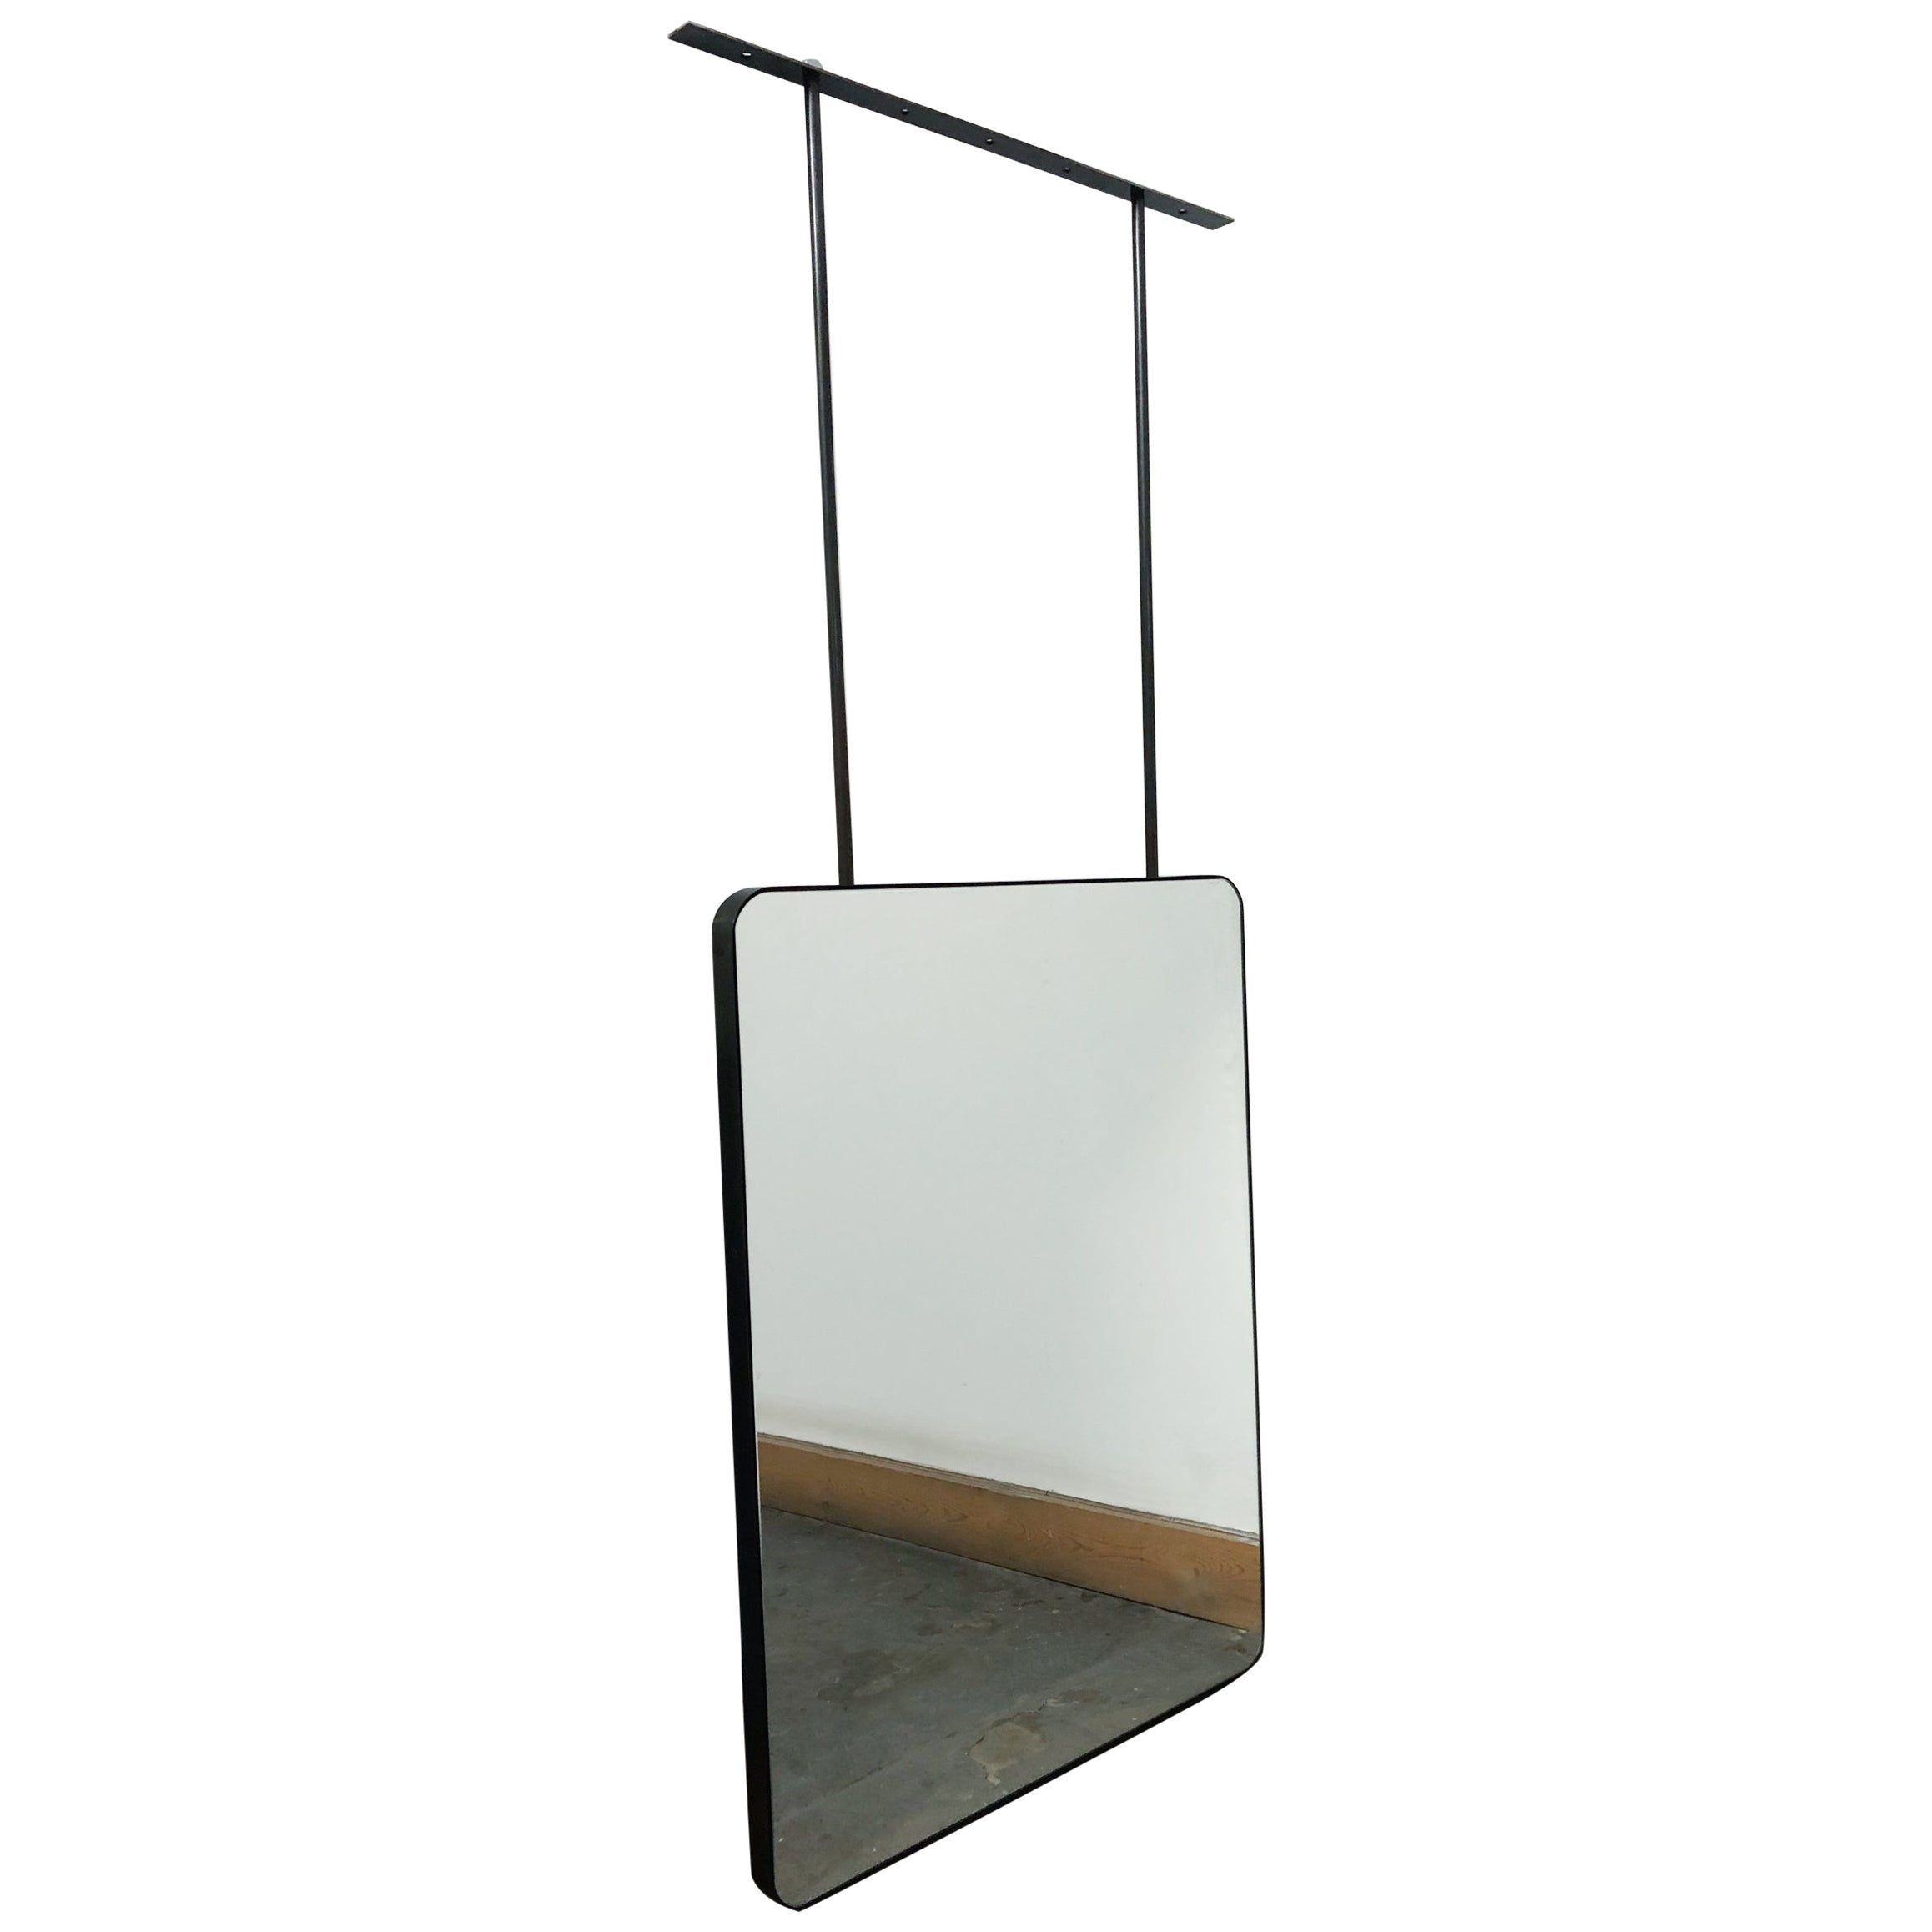 Miroir rectangulaire suspendu Quadris avec cadre en acier inoxydable noirci